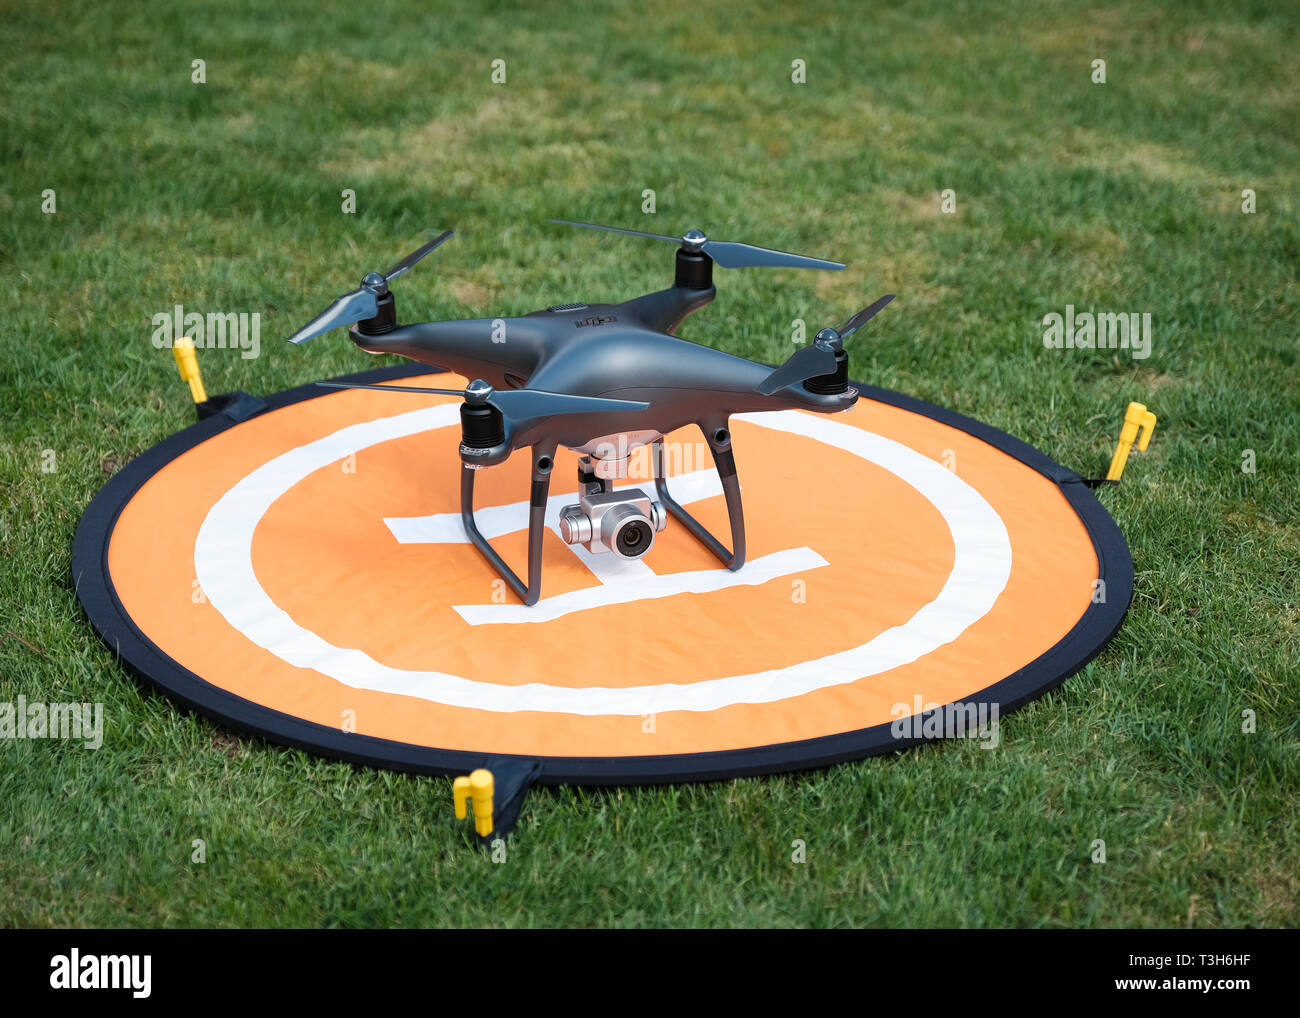 Vue de face d'un fantôme noir obsidienne Pro 4 DJI quadcopter drone sur une  plate-forme d'atterrissage orange entouré d'herbe Photo Stock - Alamy